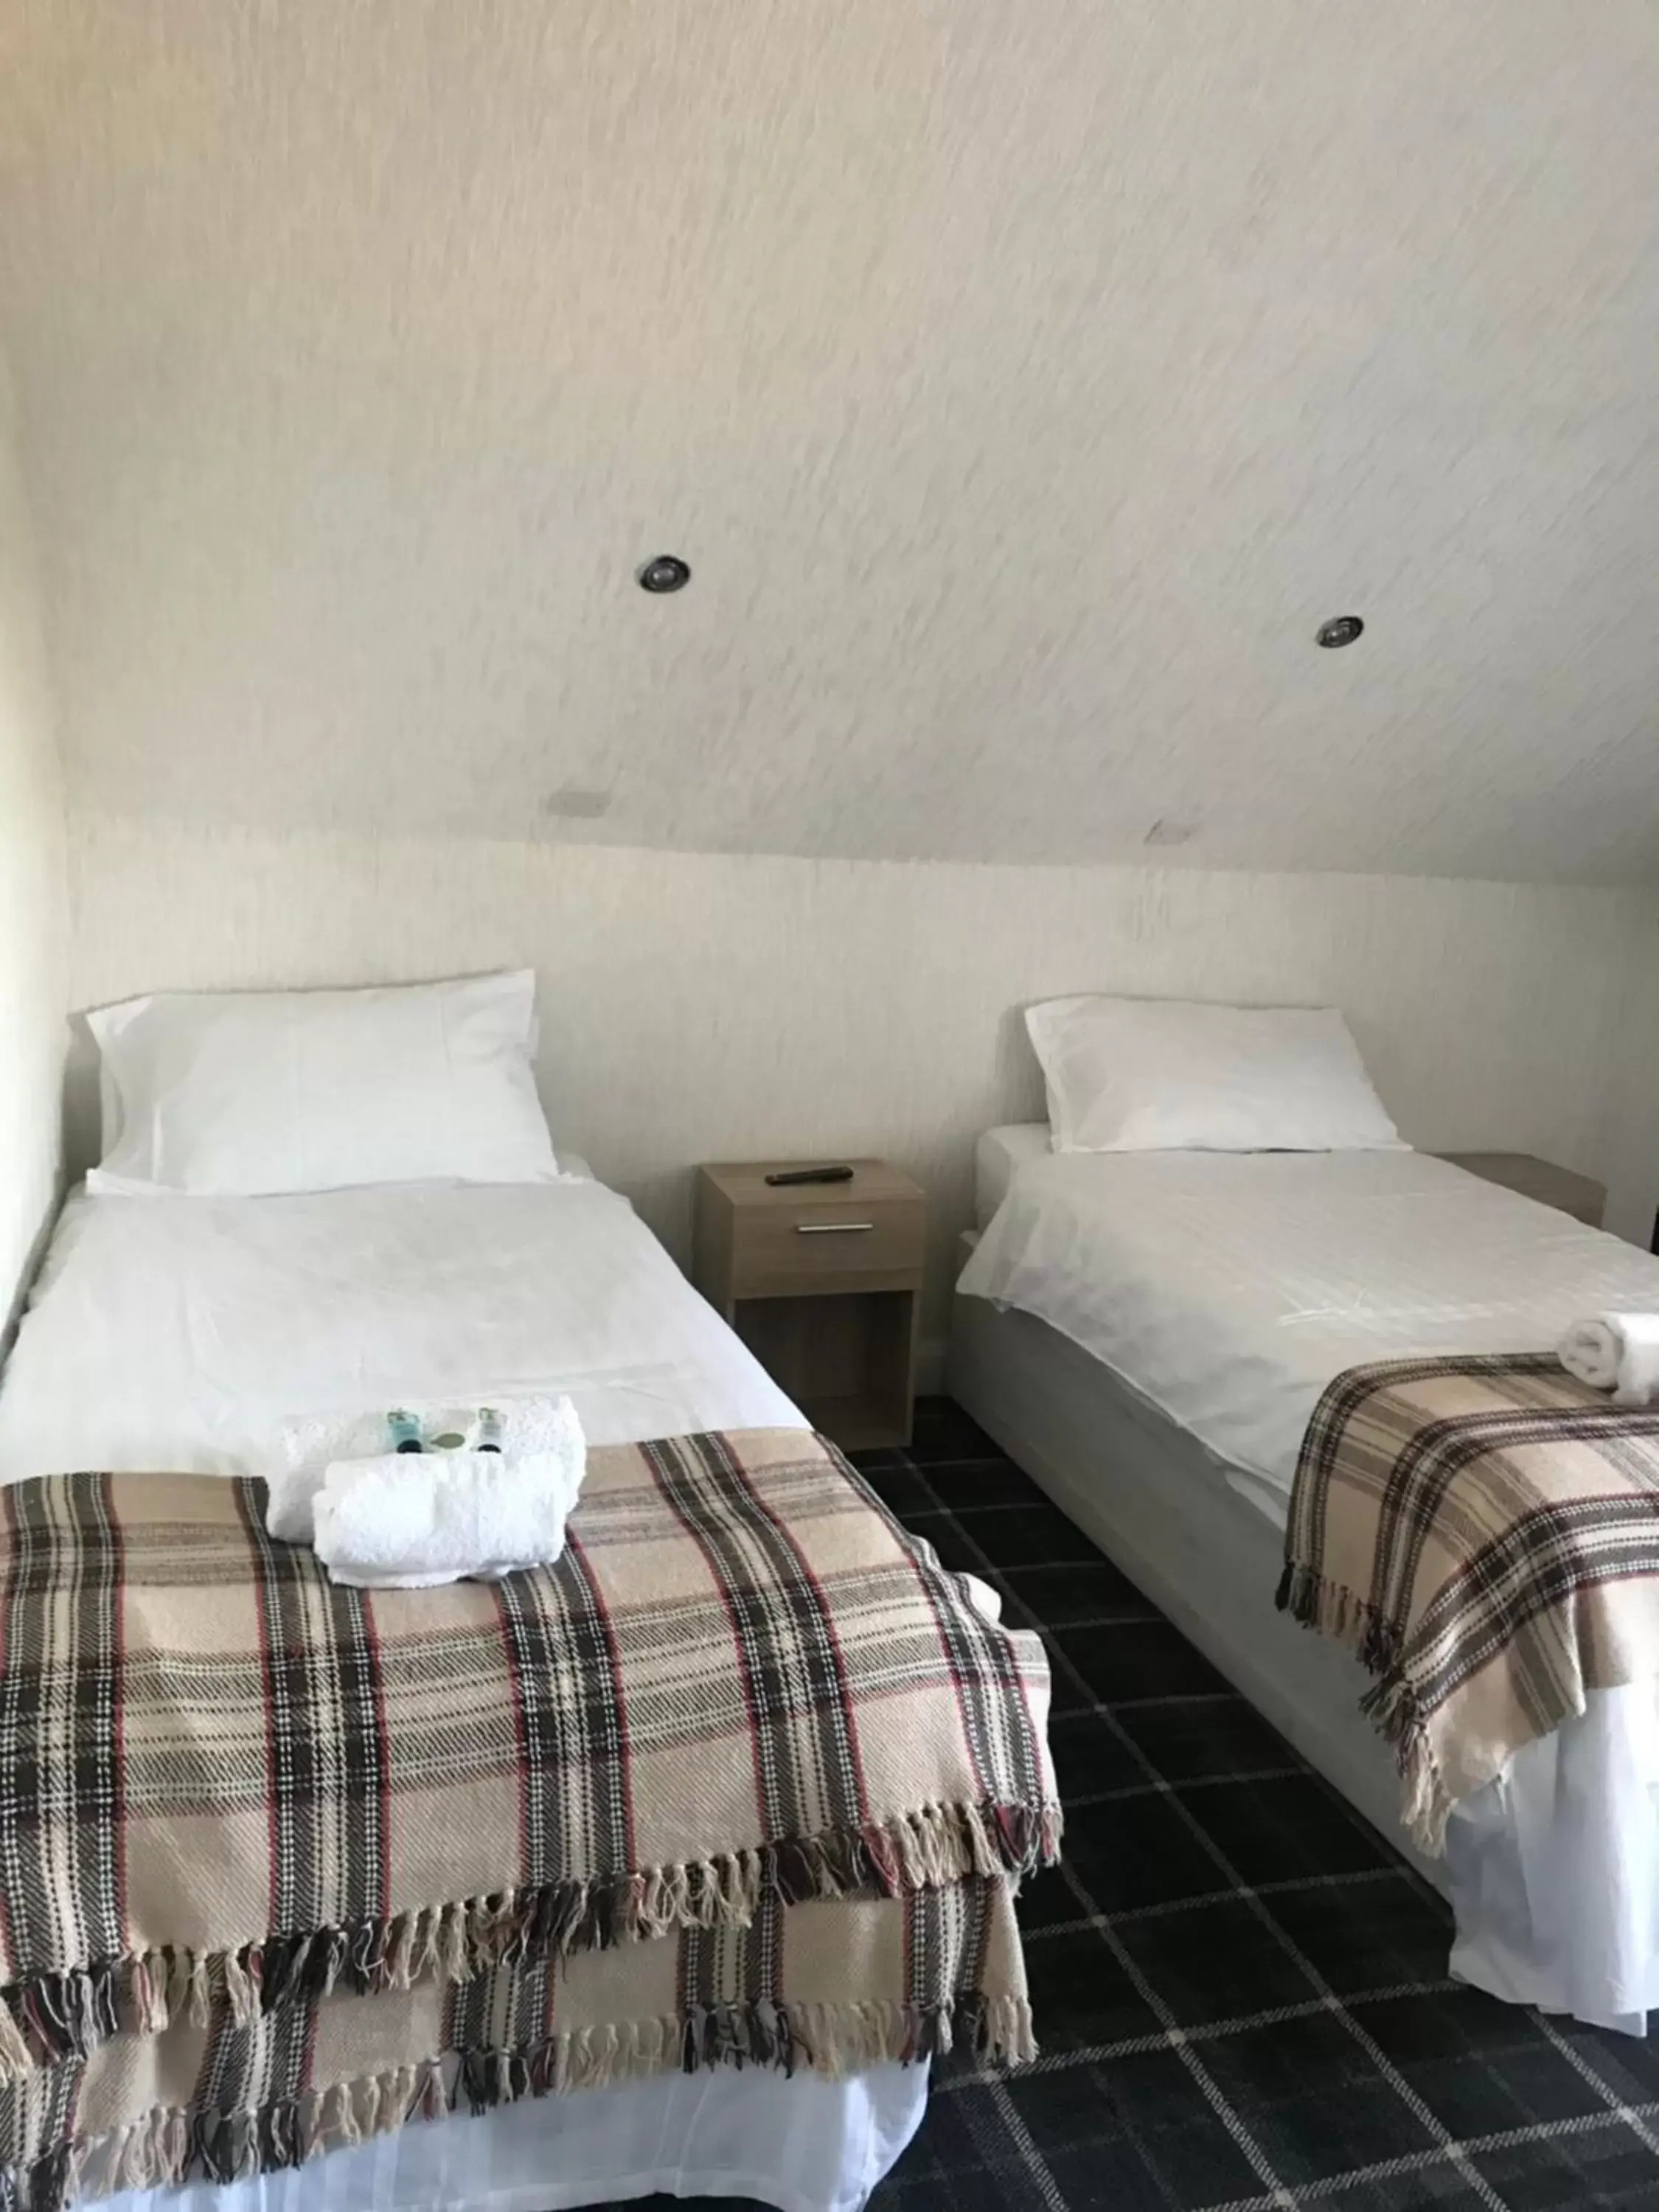 Bed in Gothenburg Hotel